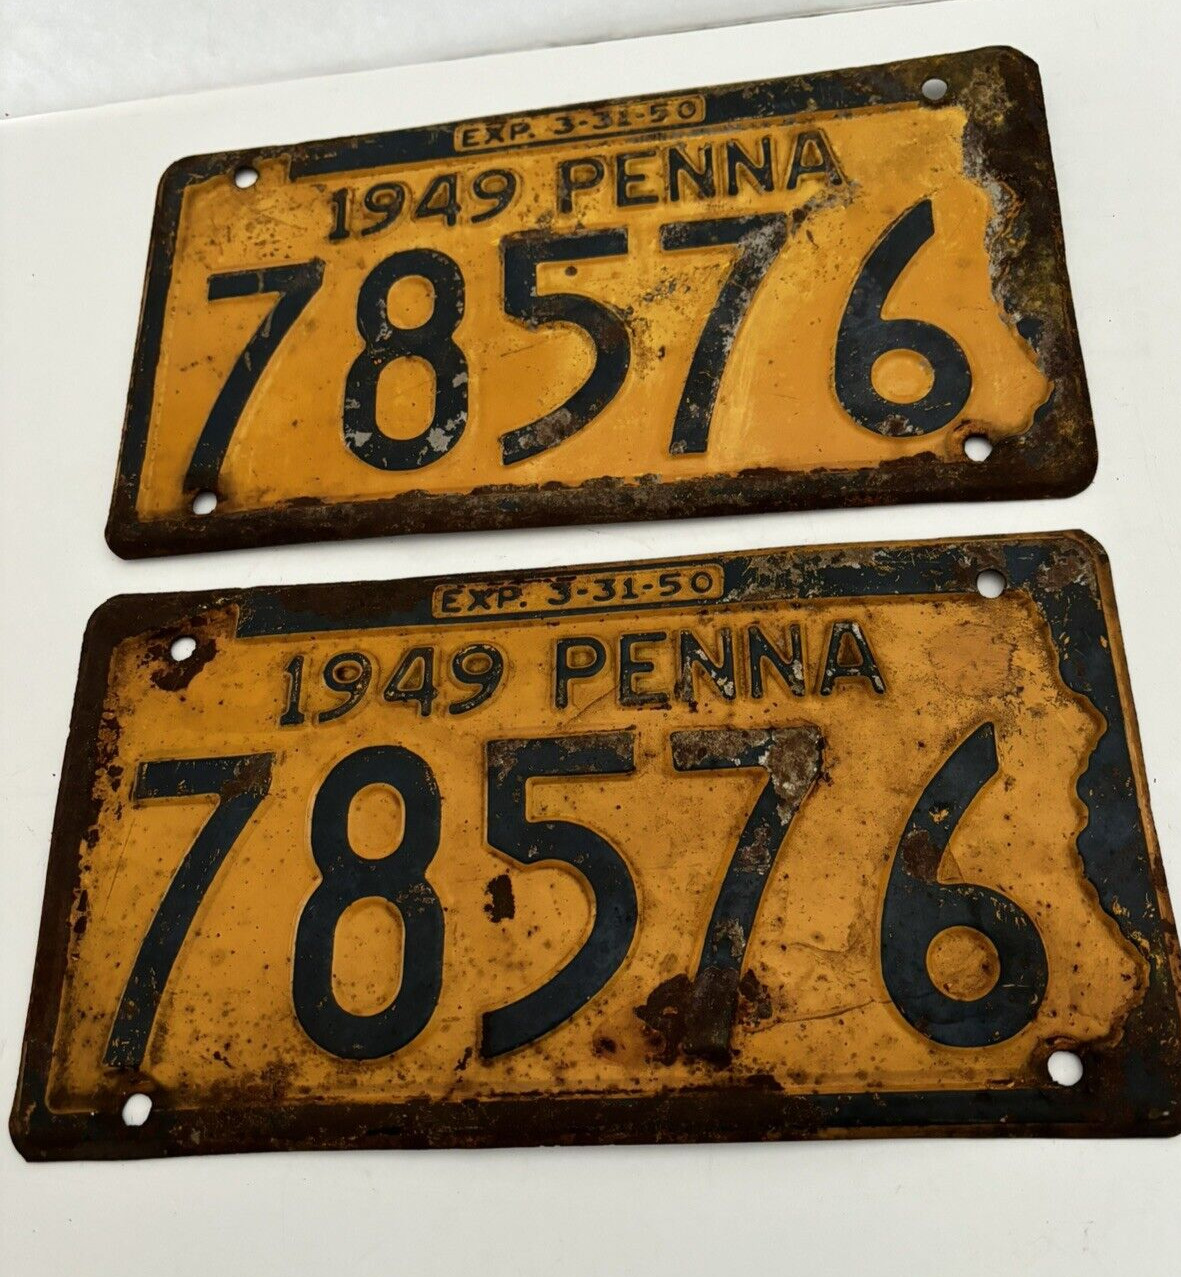 (2) Vintage 1949 Pennsylvania License Plates- 78576 Yellow